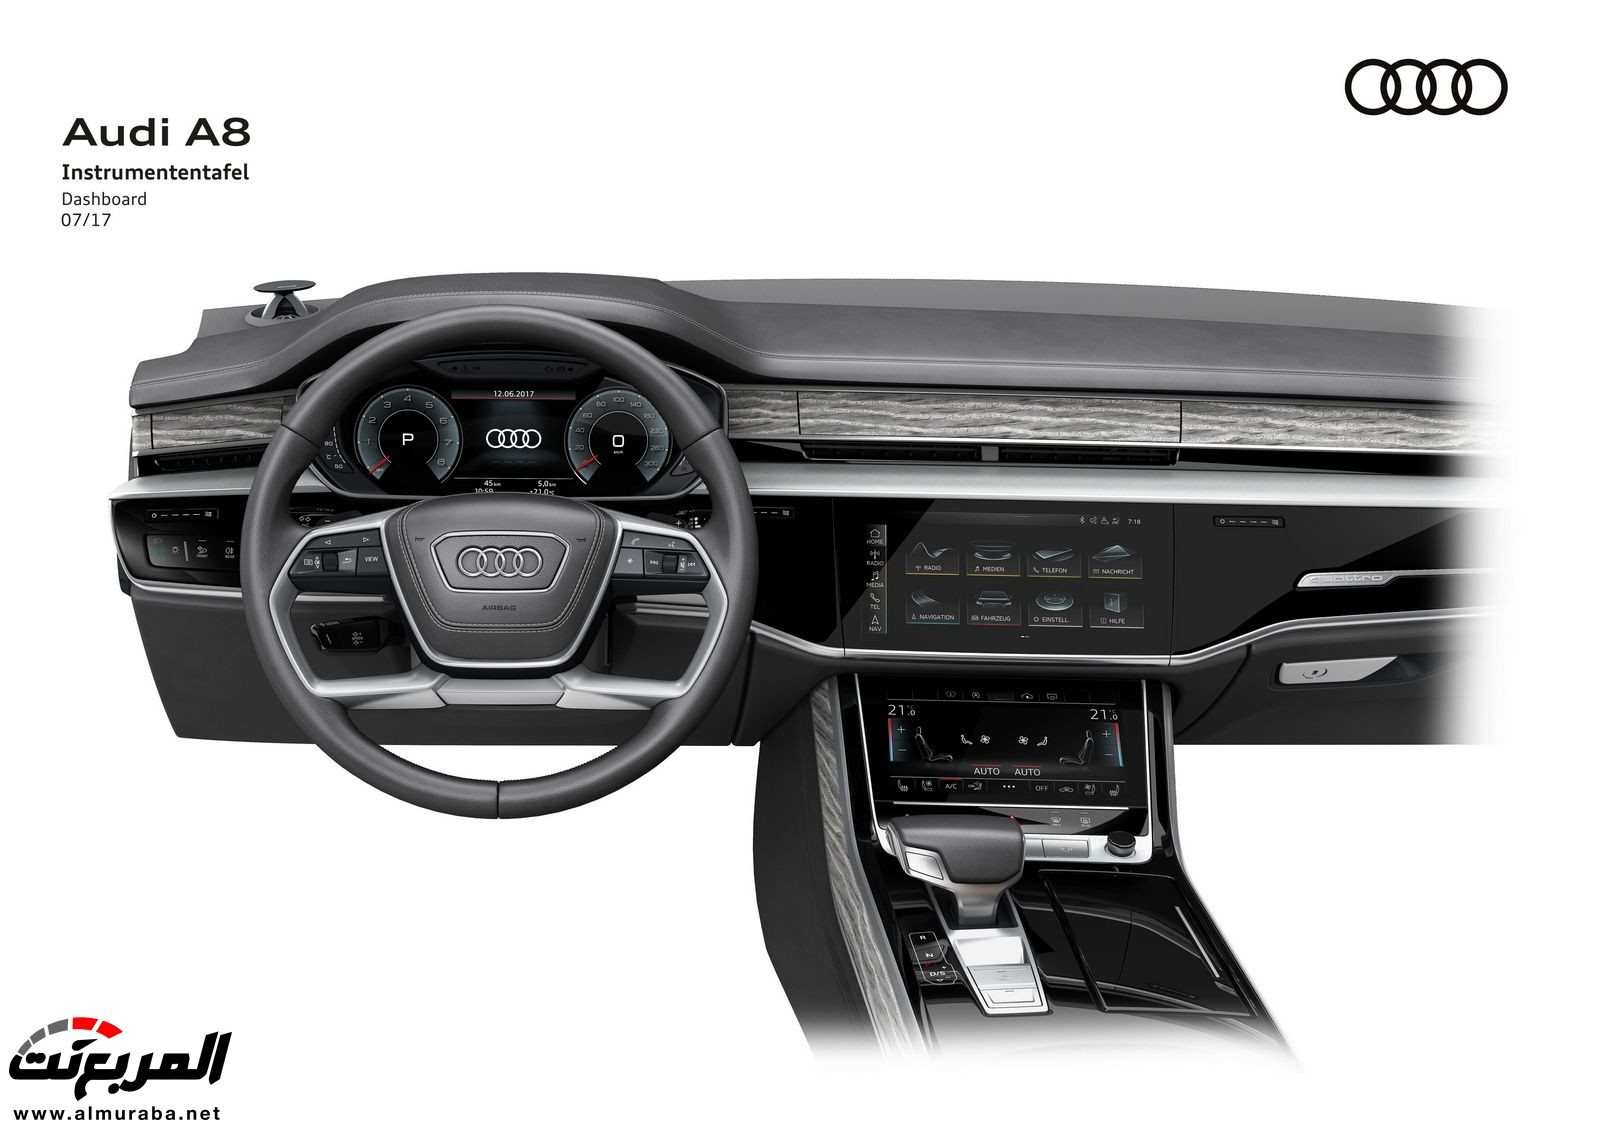 أودي A8 2018 الجديدة كلياً تكشف نفسها بتصميم وتقنيات متطورة "معلومات + 100 صورة" Audi A8 95